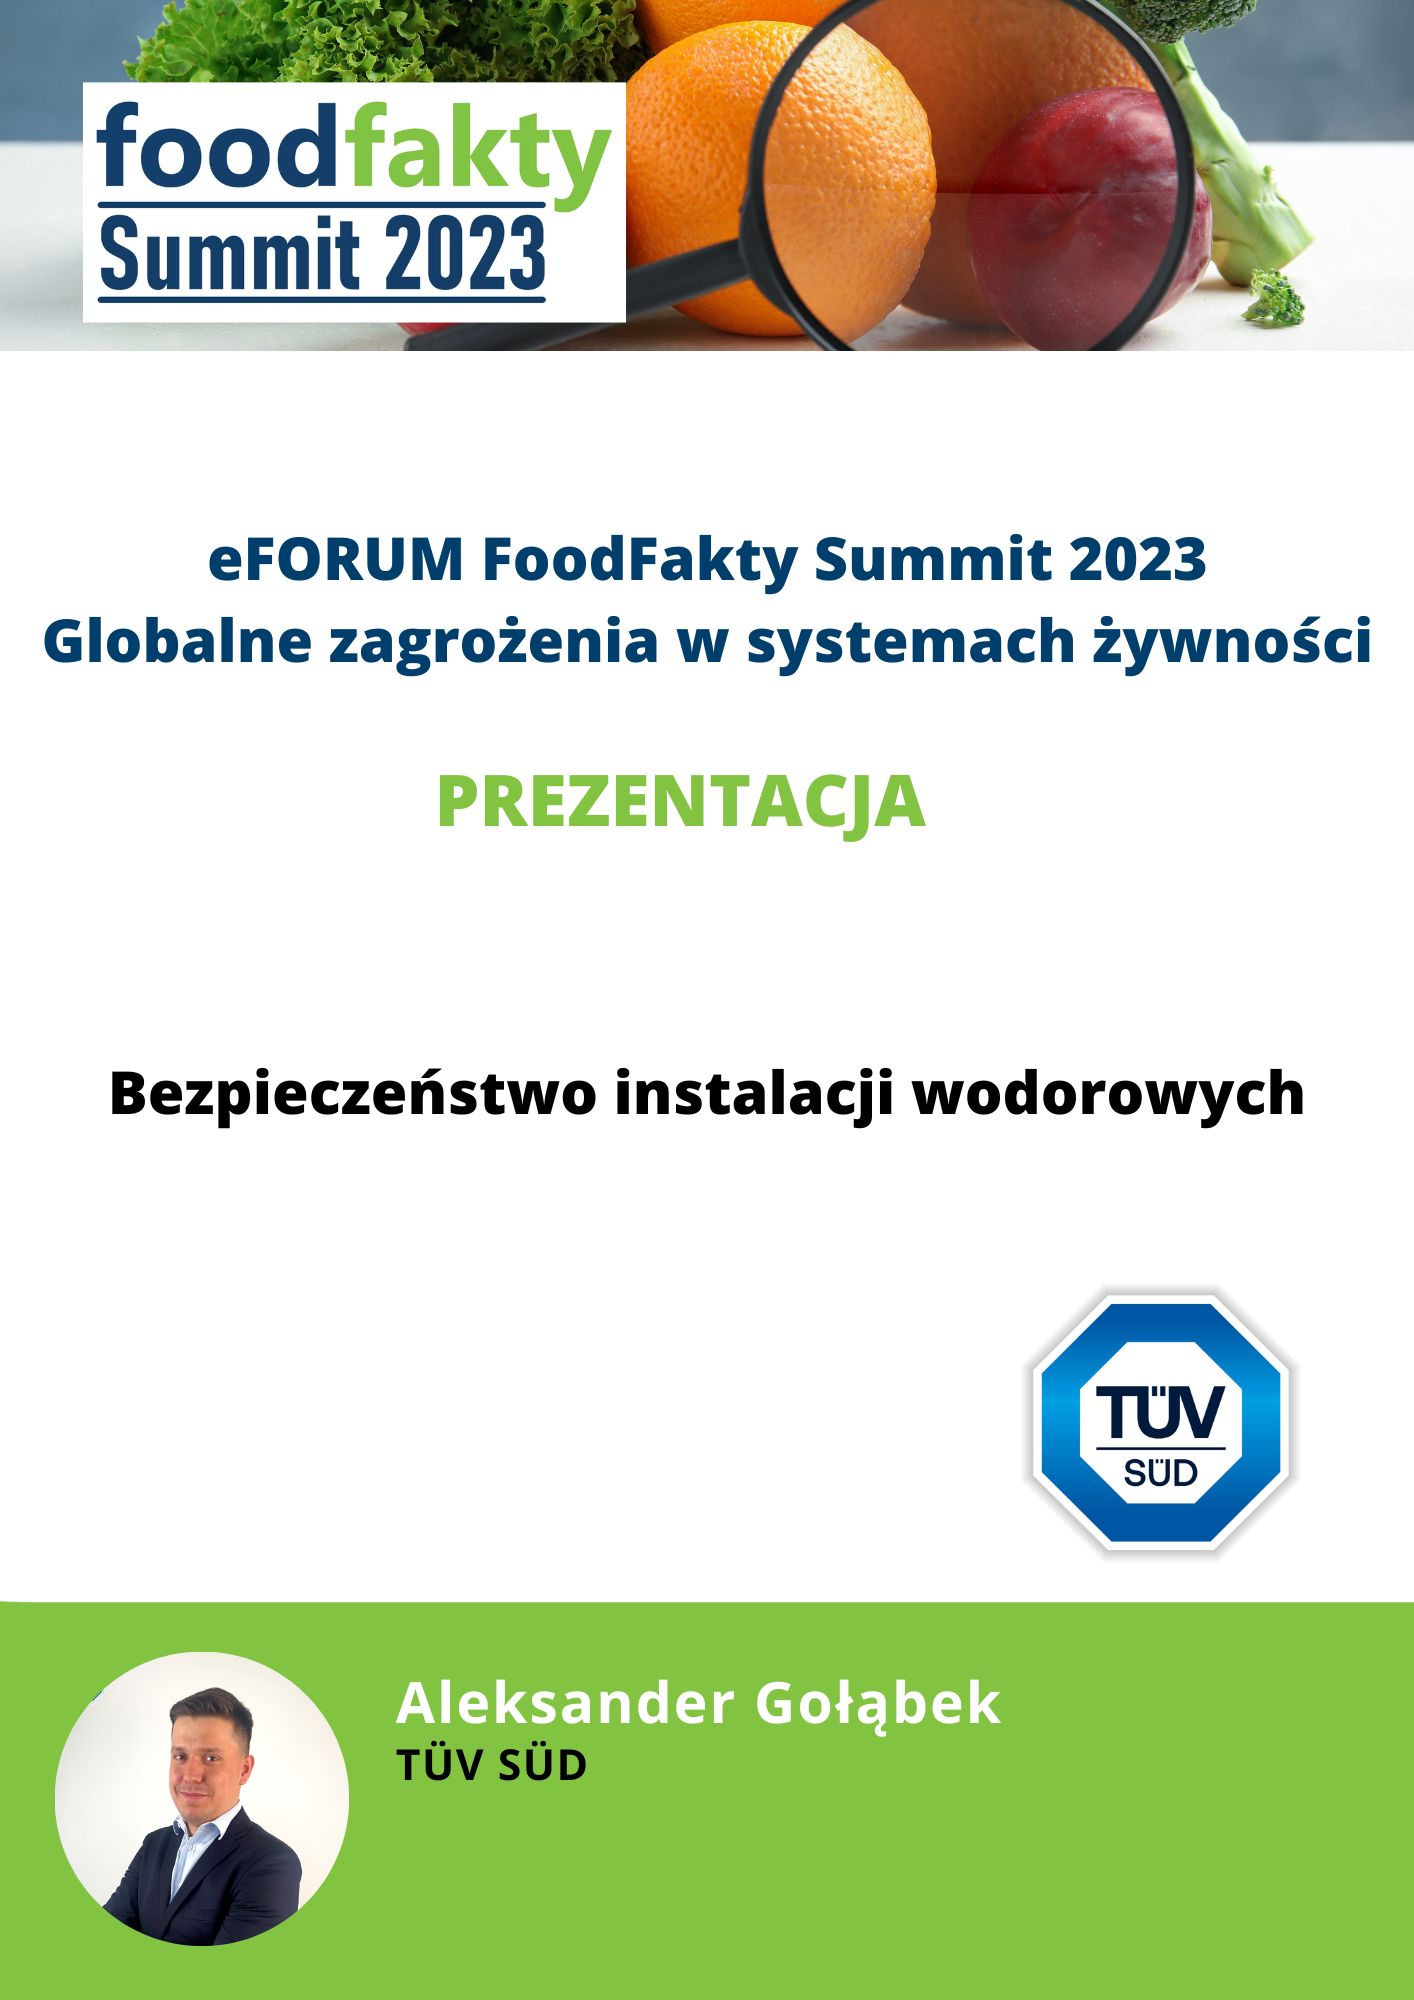 FoodFakty Summit Globalne i rosnące zagrożenia w systemach żywności - prezentacja TÜV SÜD